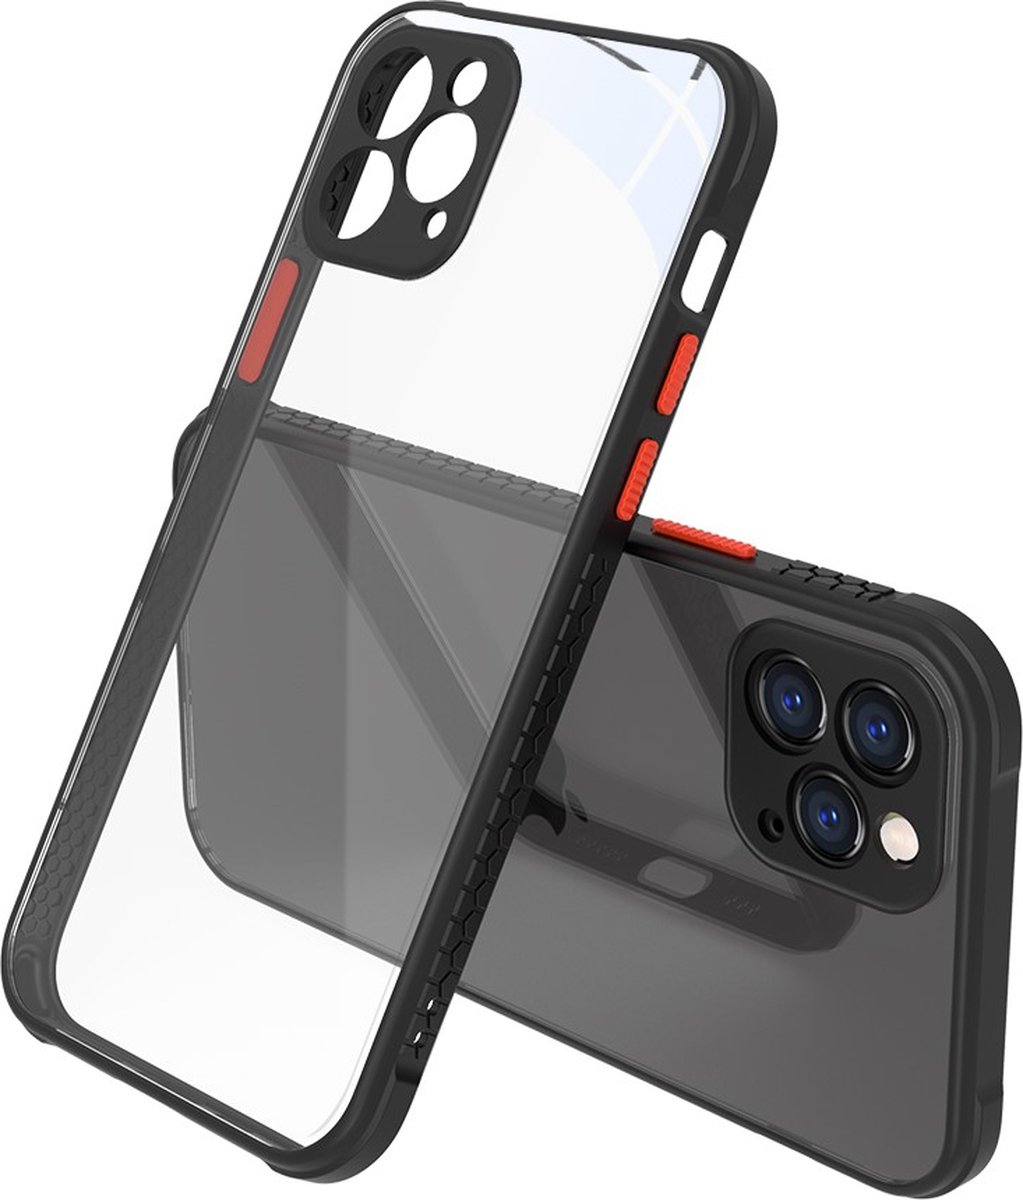 Peachy Clear kunststof hoesje voor iPhone 12 en iPhone 12 Pro - transparant met zwart